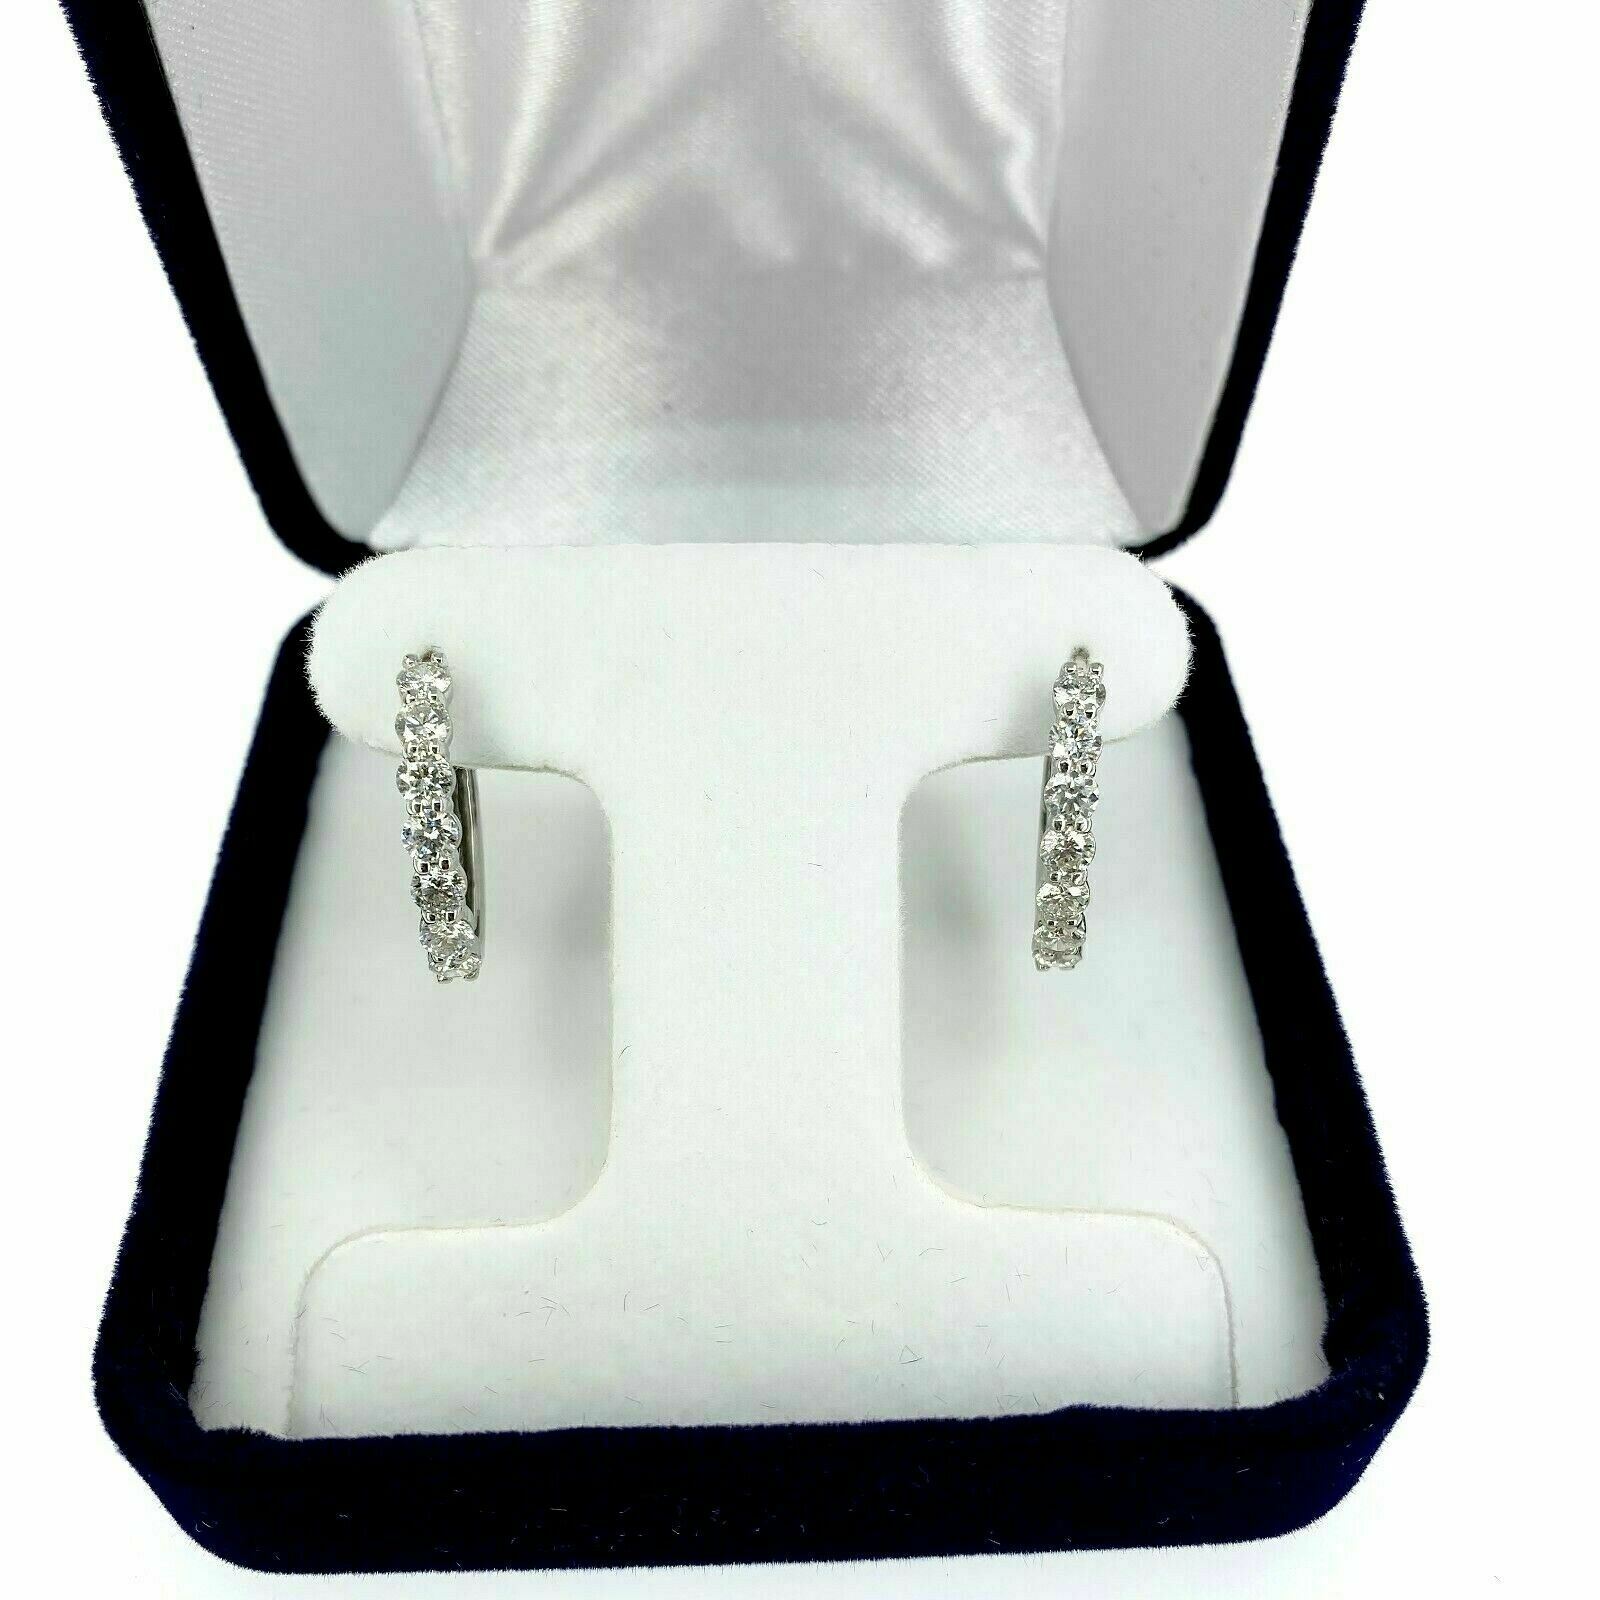 1.35 Carats t.w. Diamond Oval Hoop Earrings 14 Karat White Gold 0.75 Inch Drop